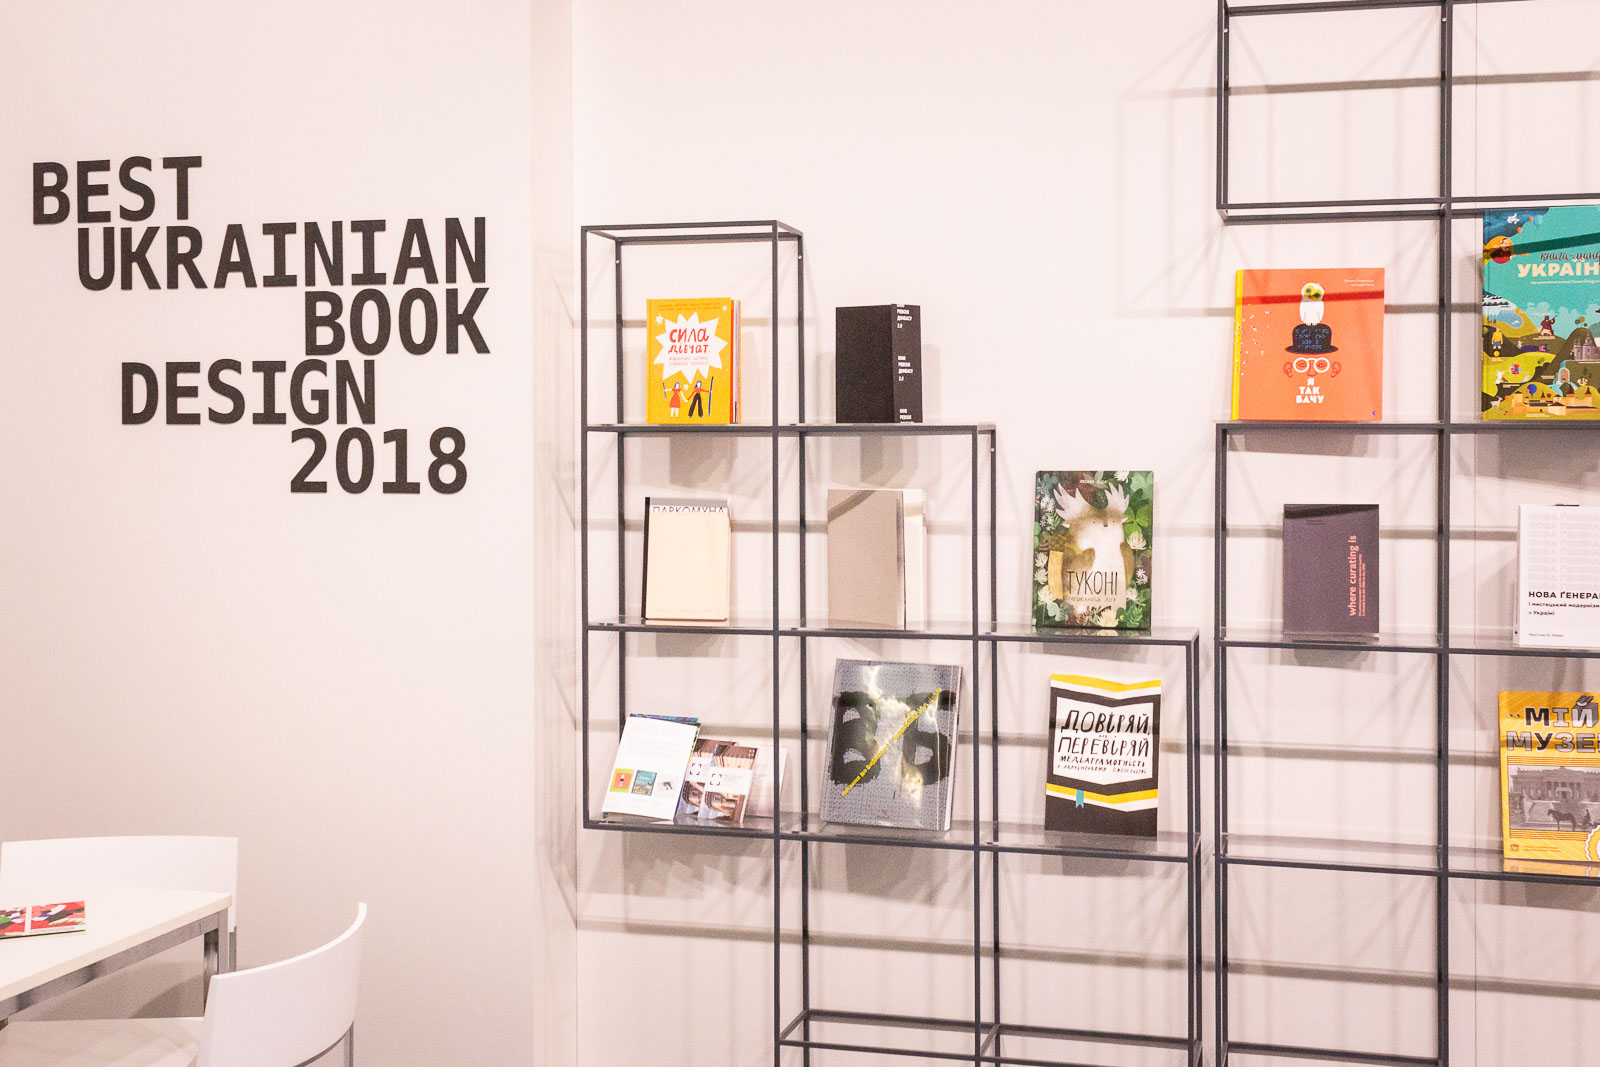 Buchmesse Frankfurt 2018